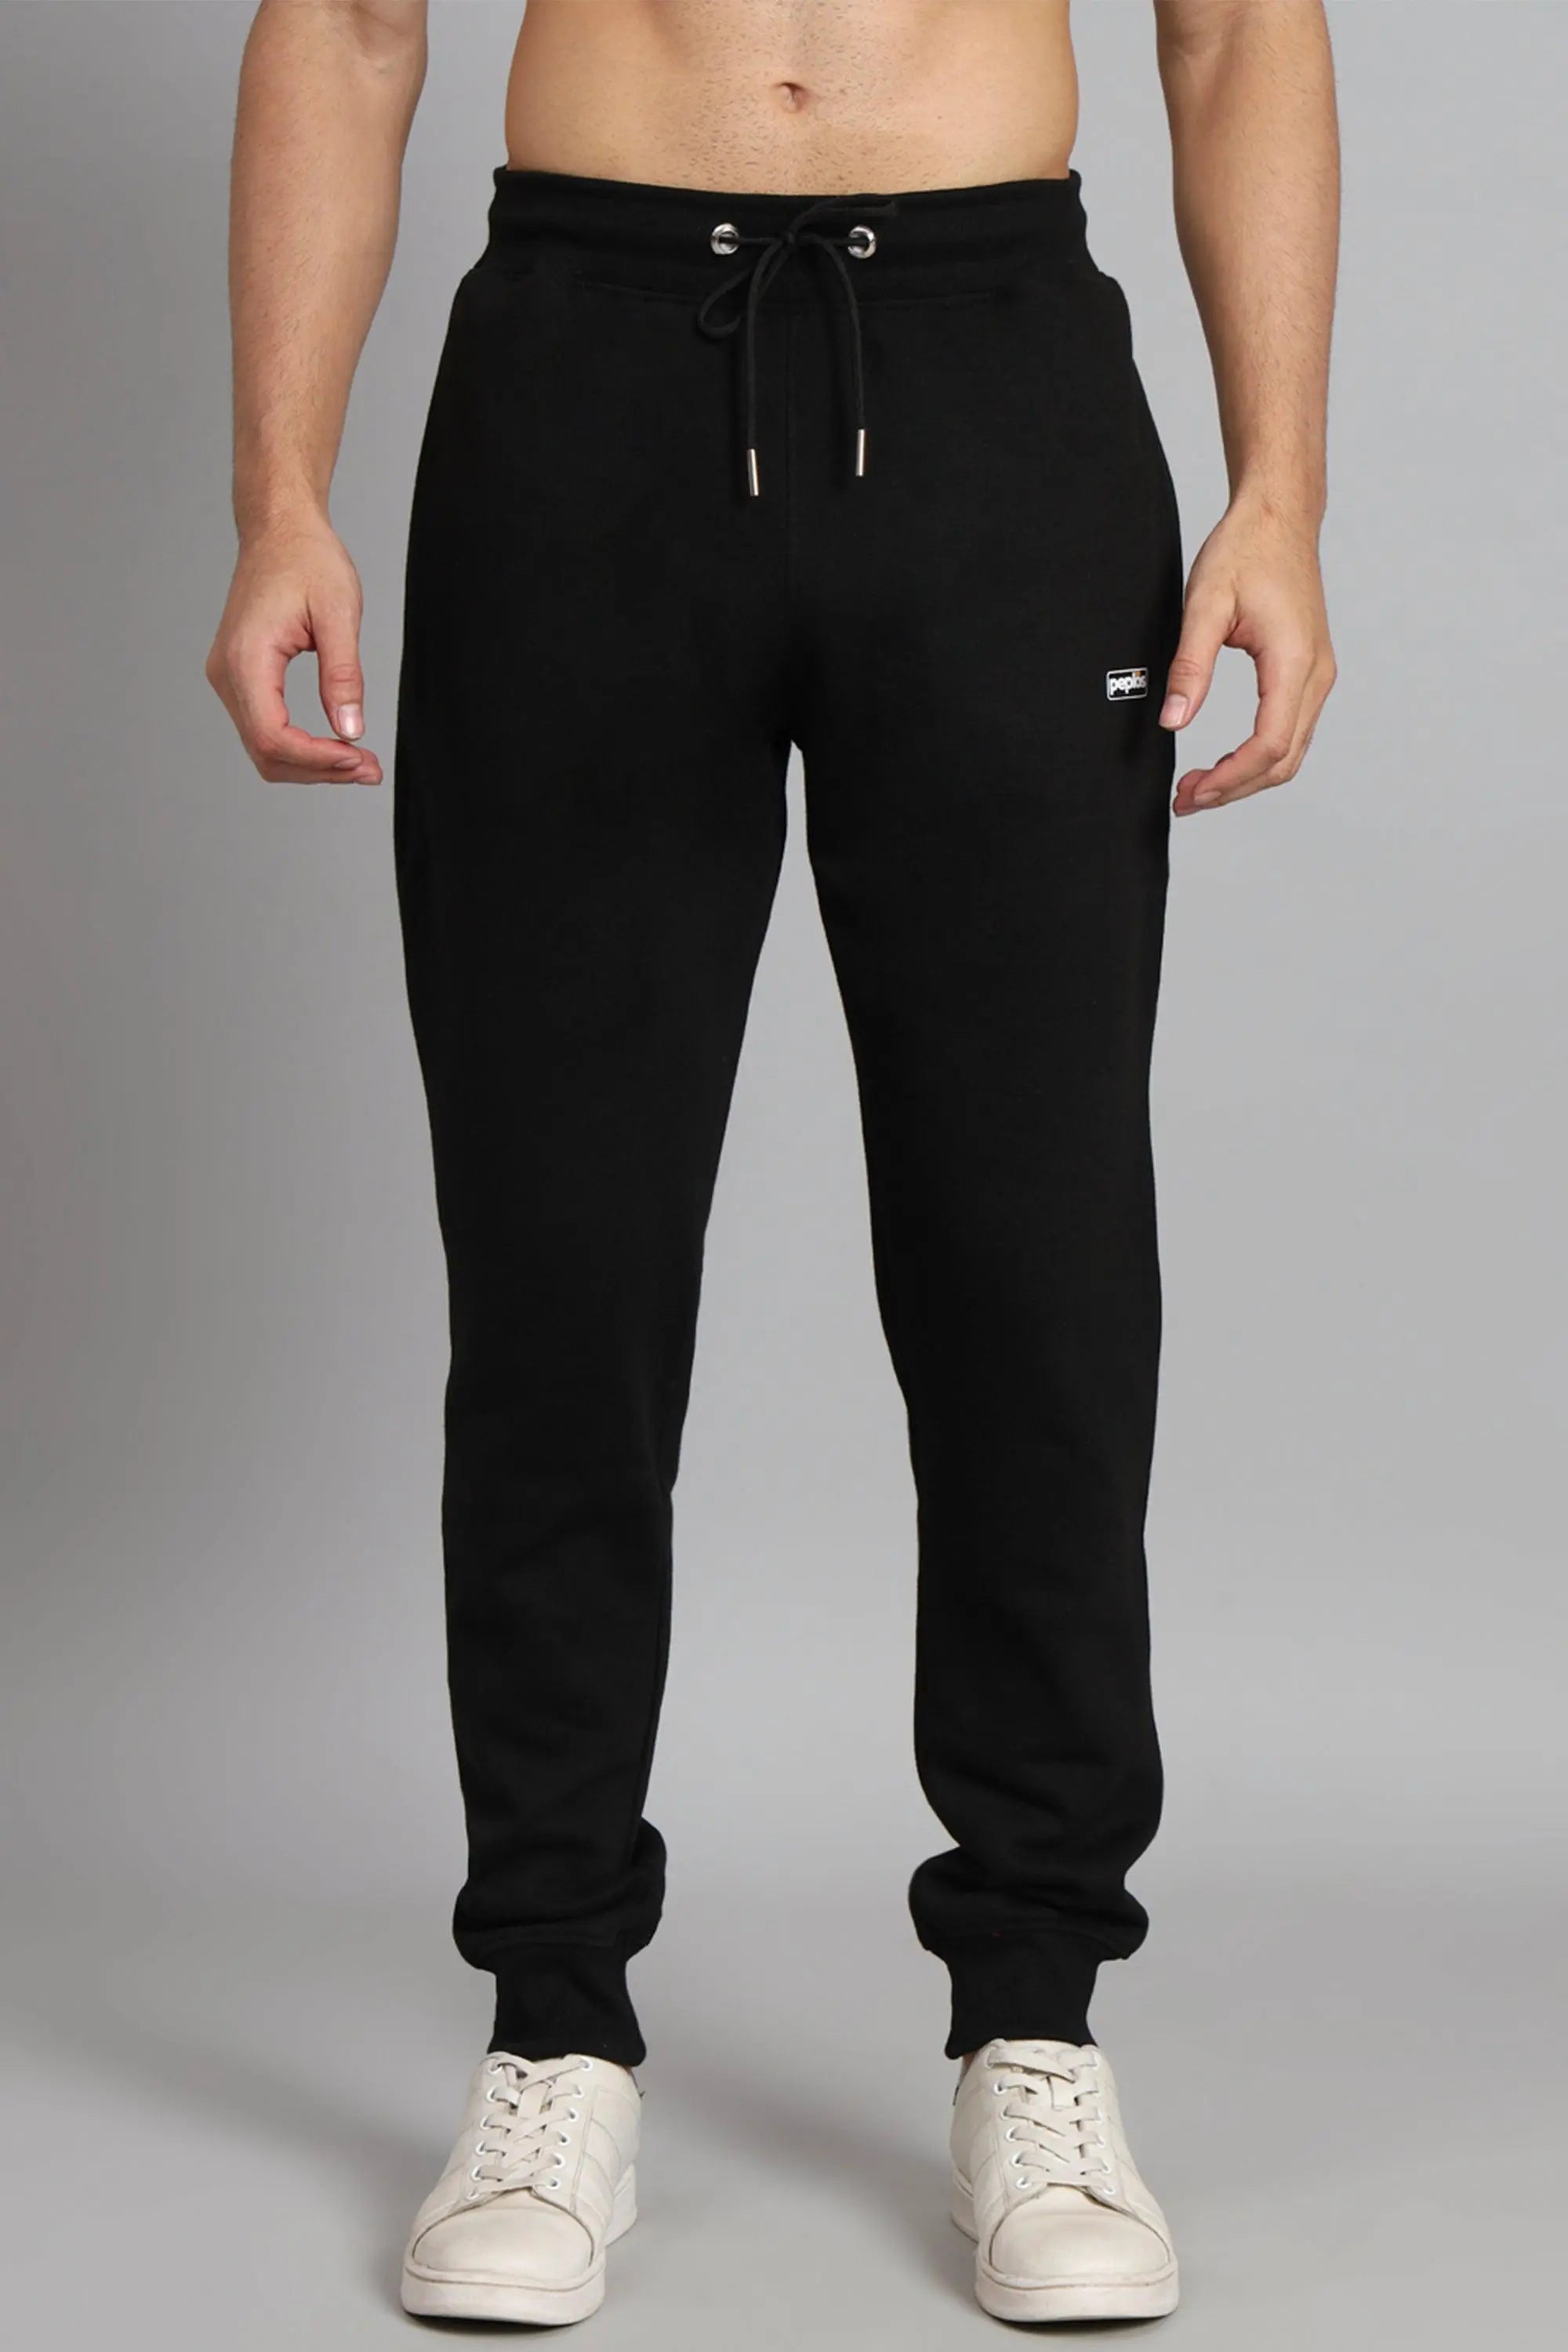 Buy FidgetGear Men Gym Sports Suit Hoodie Jacket Sweatshirt + Trousers Set  Running Fitness Sportswear Dark Gray M at Amazon.in